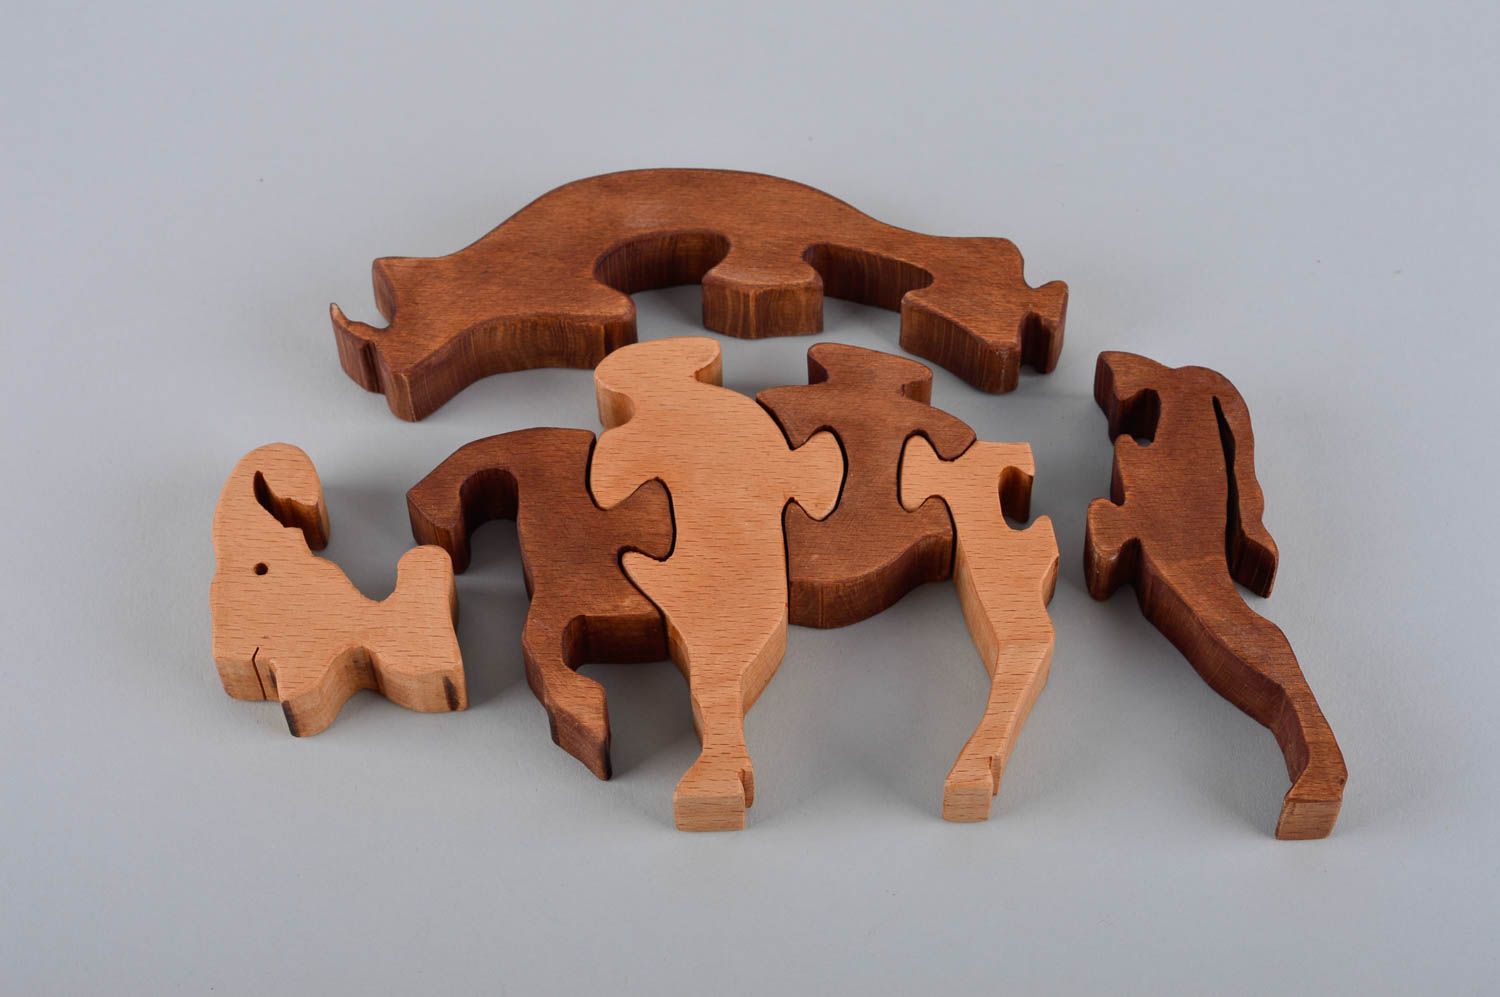  Развивающая игрушка ручной работы детская головоломка пазлы для детей бизон фото 5